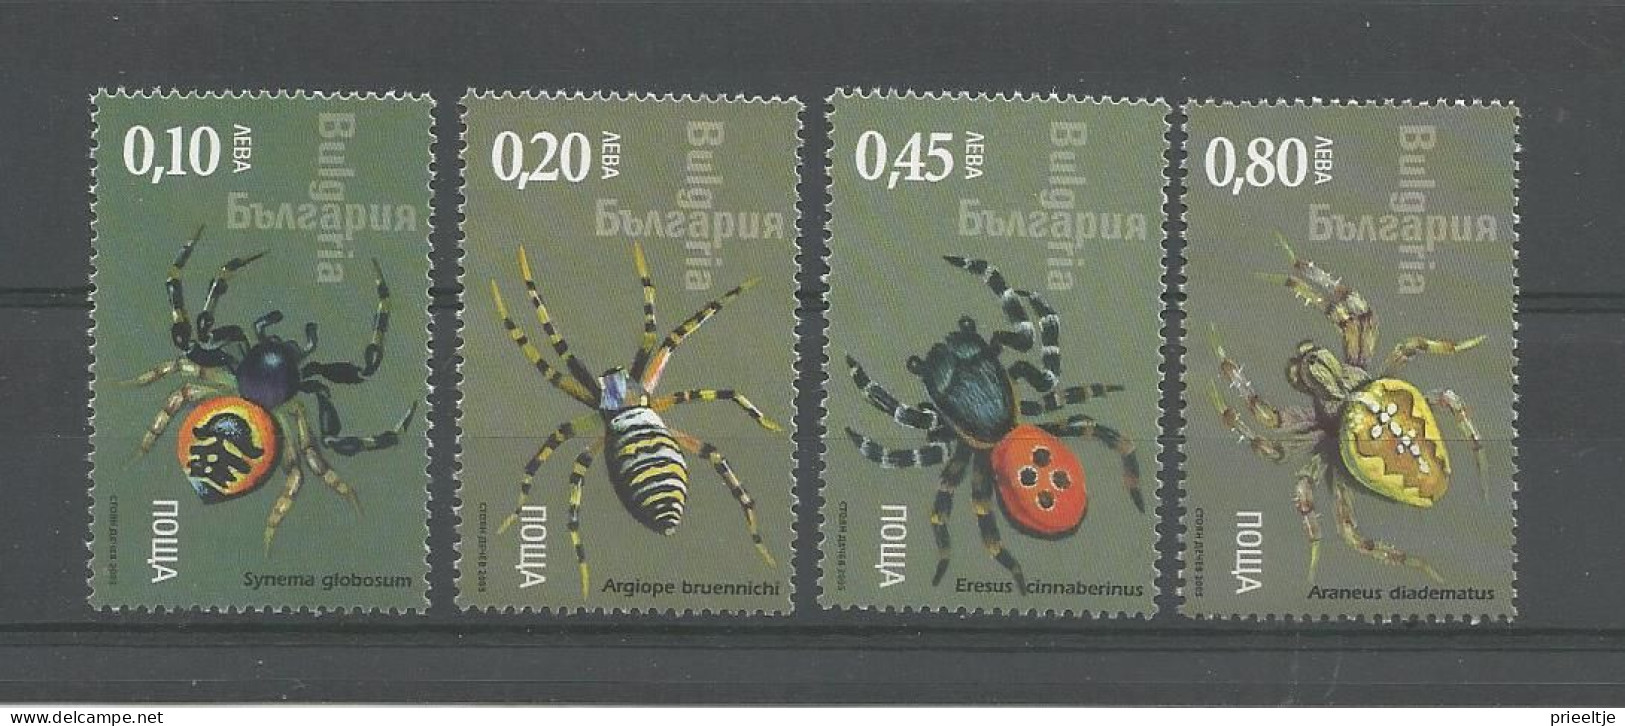 Bulgaria 2005 Spiders Y.T. 4066/4069 ** - Ongebruikt